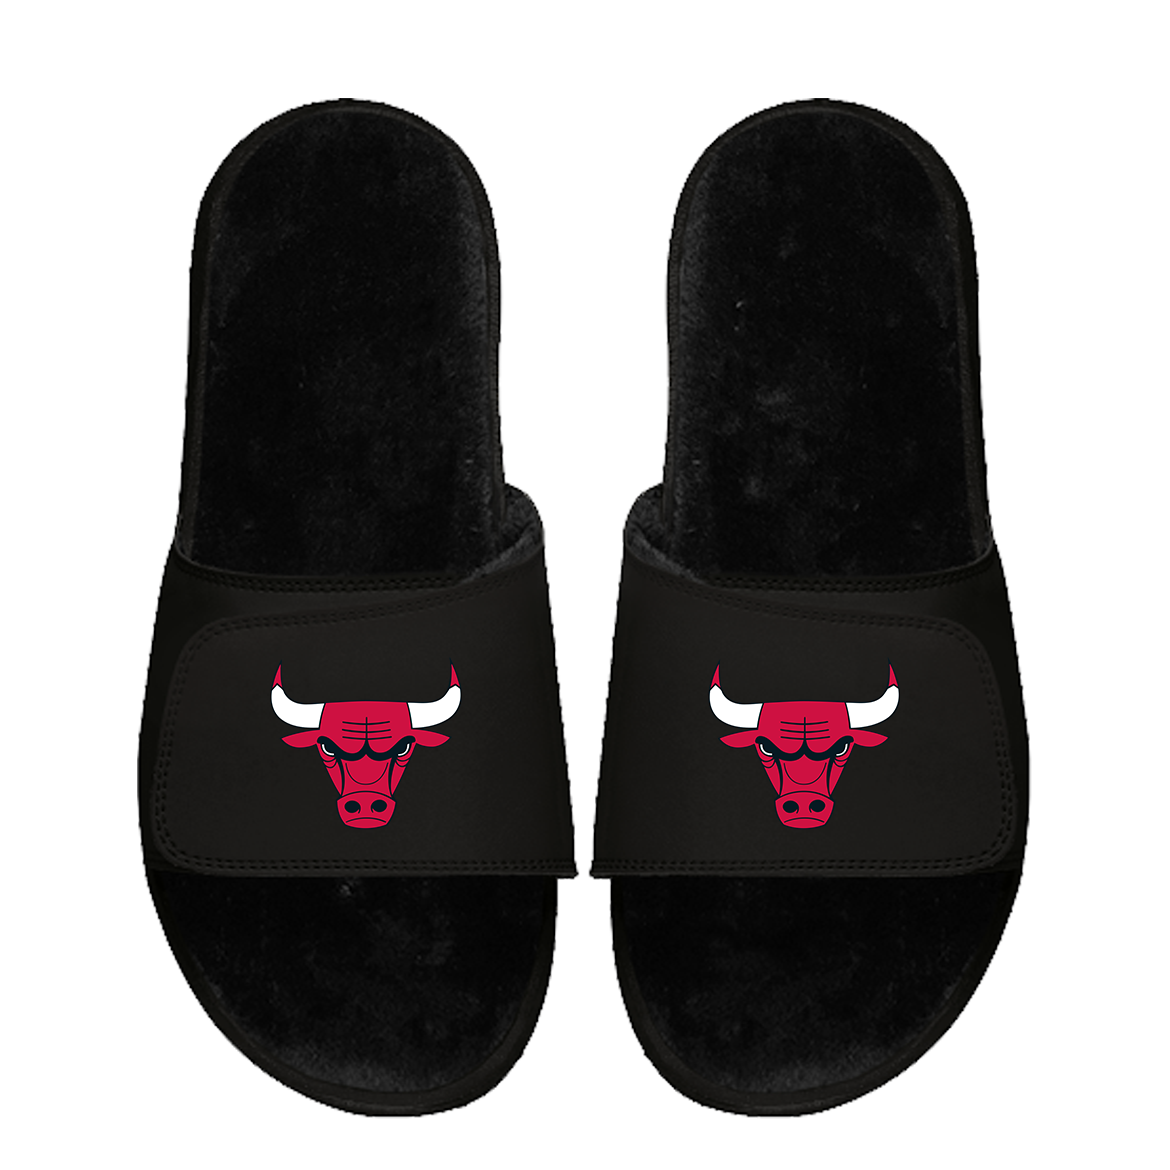 Chicago Bulls Primary Black Fur